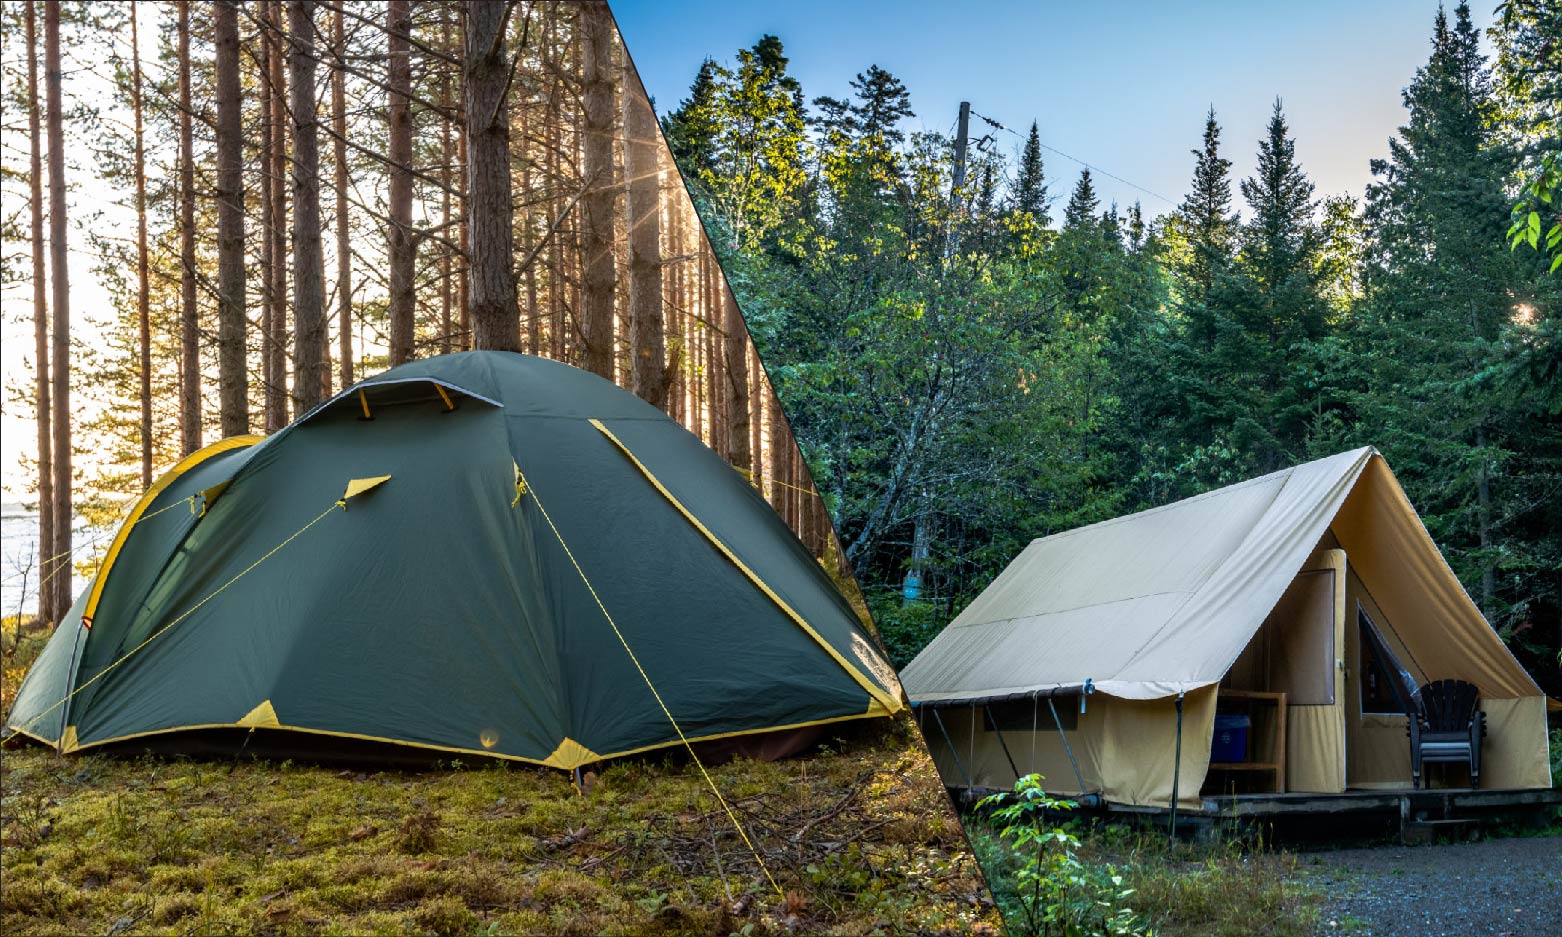 Dome Tent vs. Cabin Tent